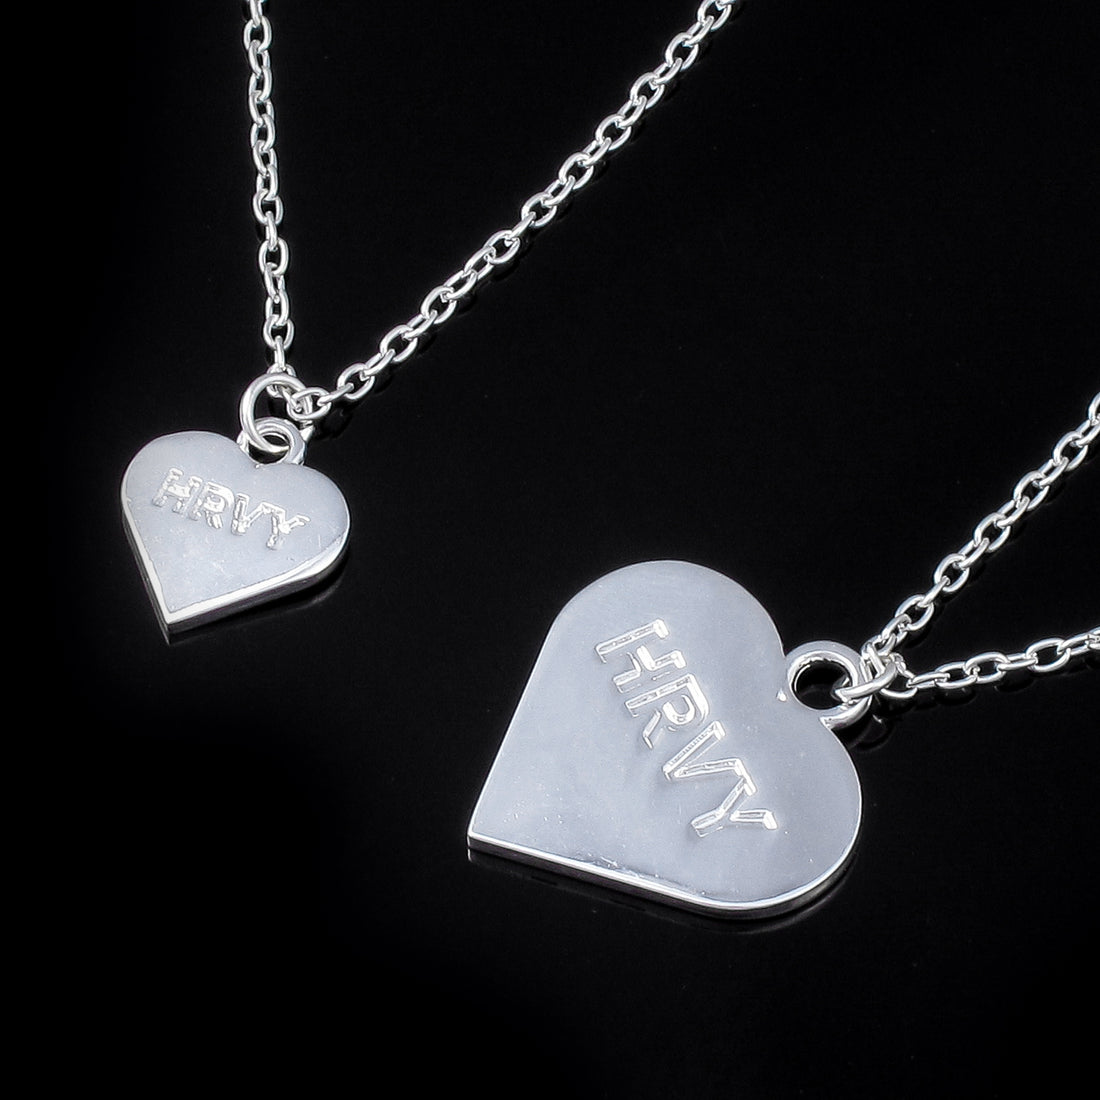 HRVY Heart Necklace & Bracelet Set